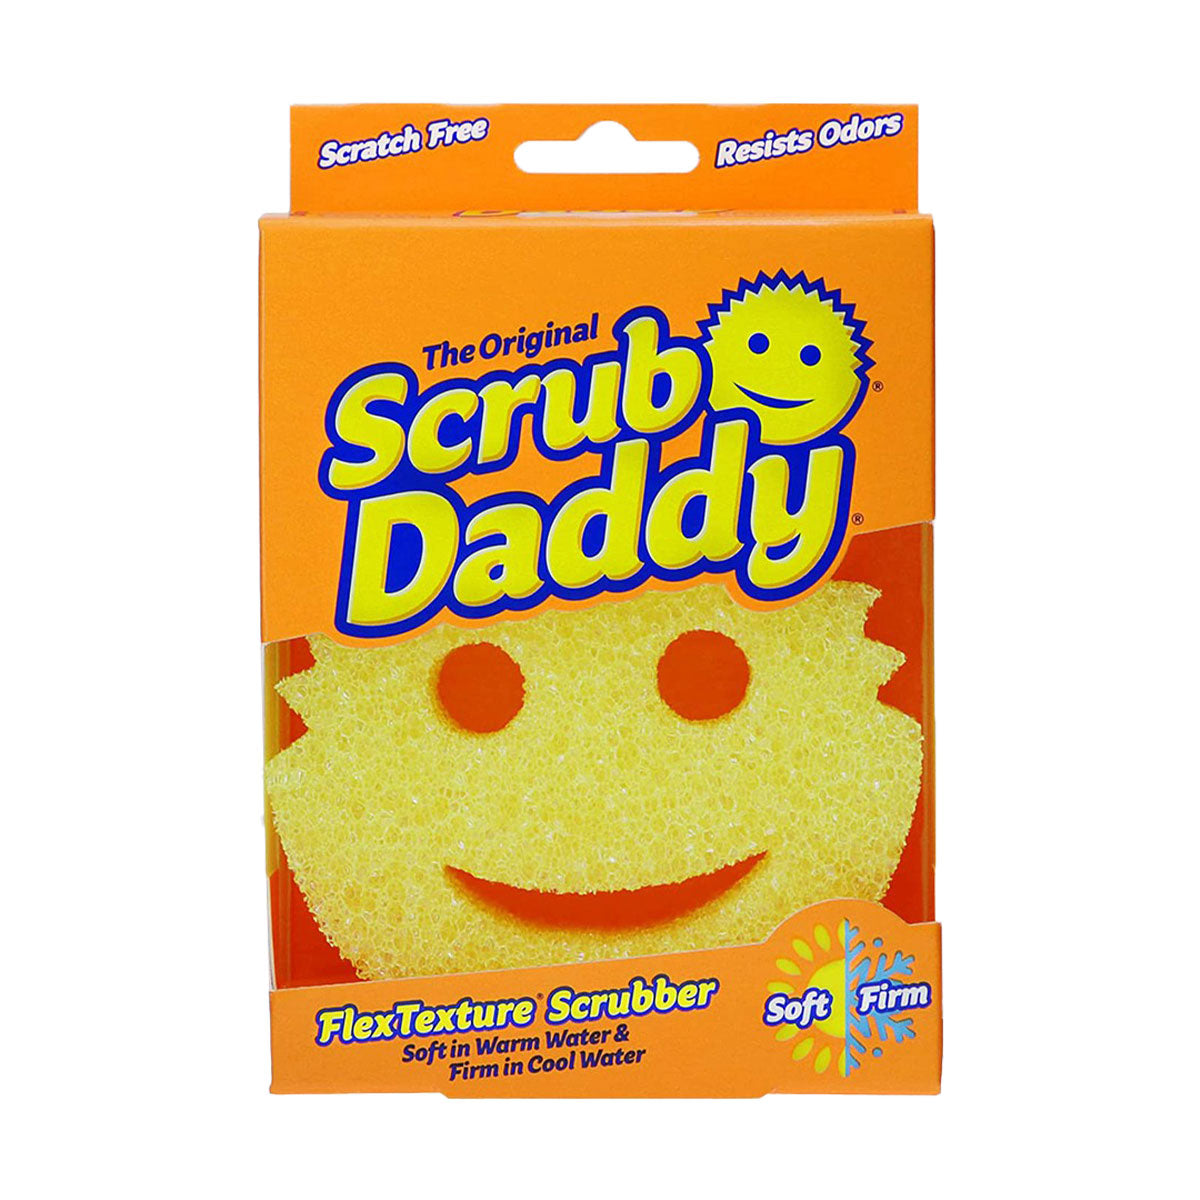 Esponja Scrub Daddy, la esponja favorita de USA, anti olores 1 unidad